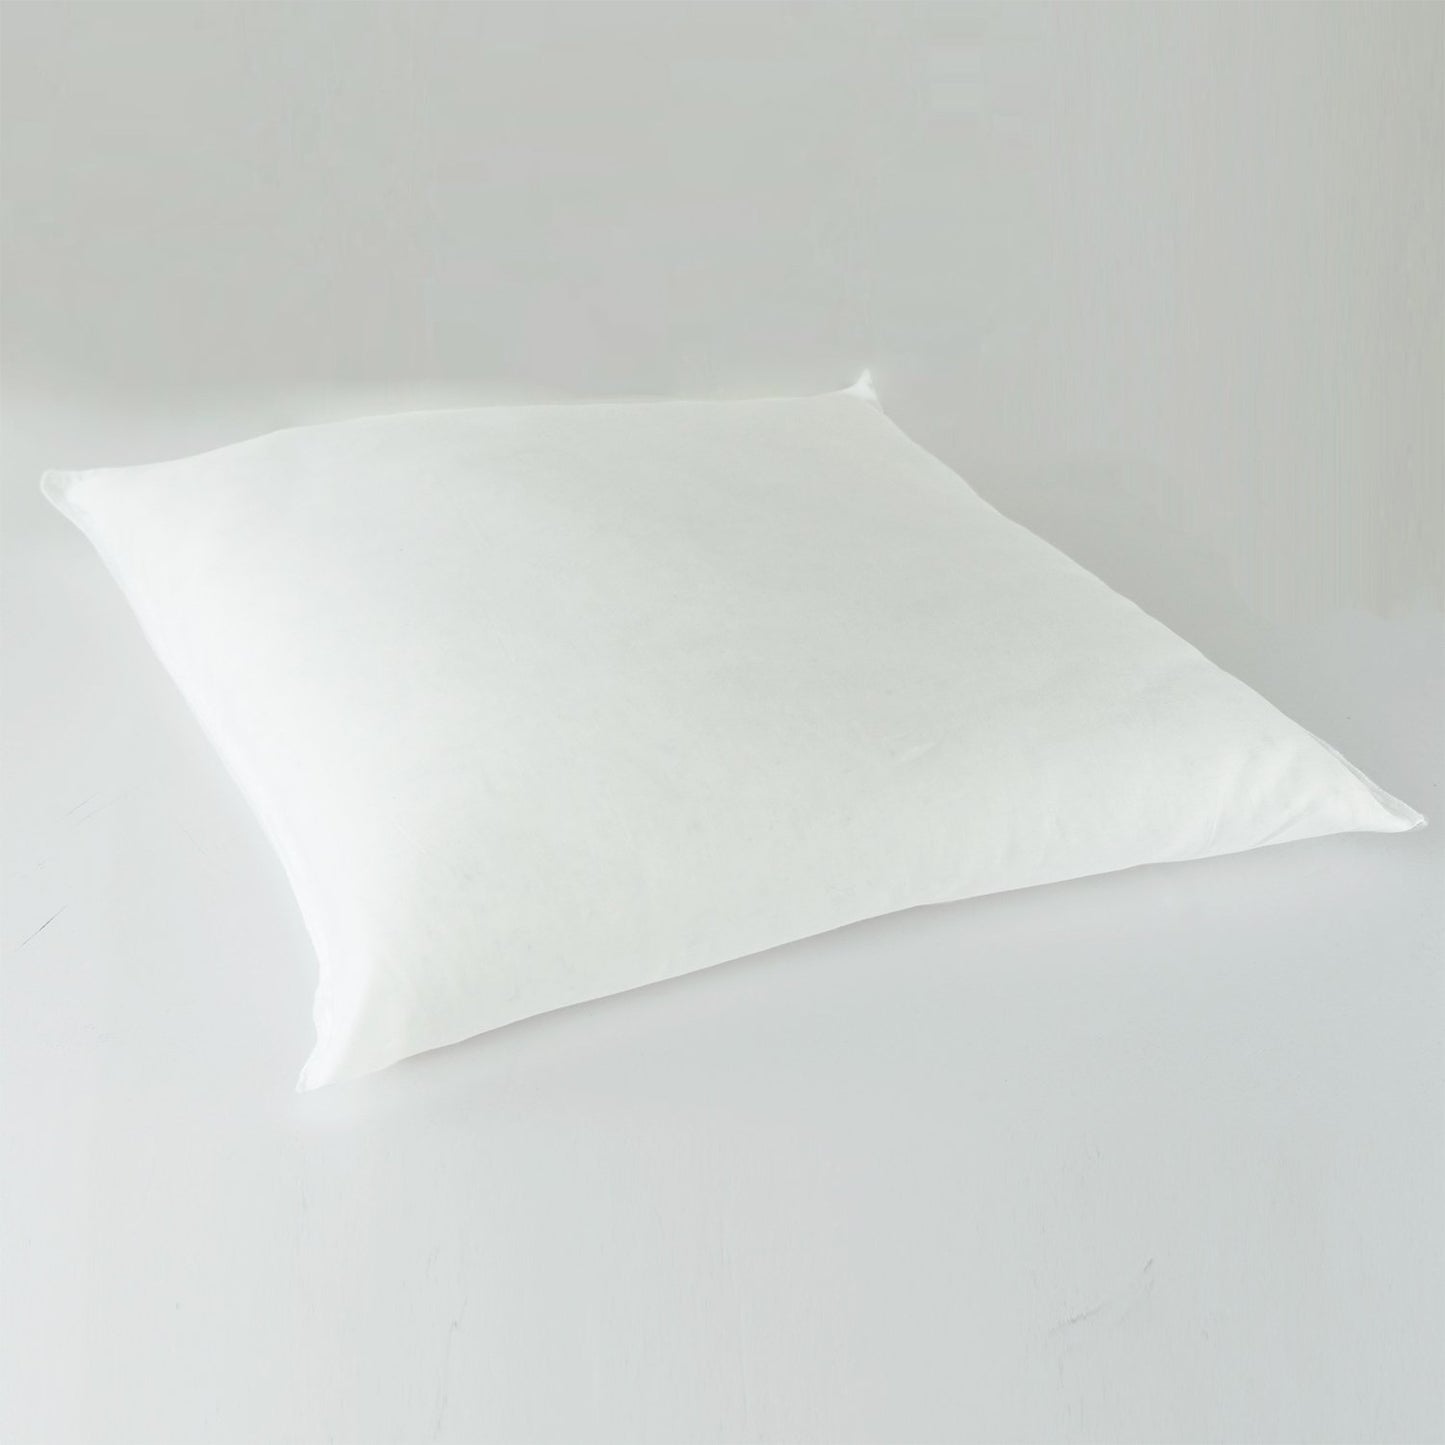 J-Life Patchi Navy Zabuton Floor Pillow_Pillows & Shams_Zabuton Floor Pillows_100% Cotton_1